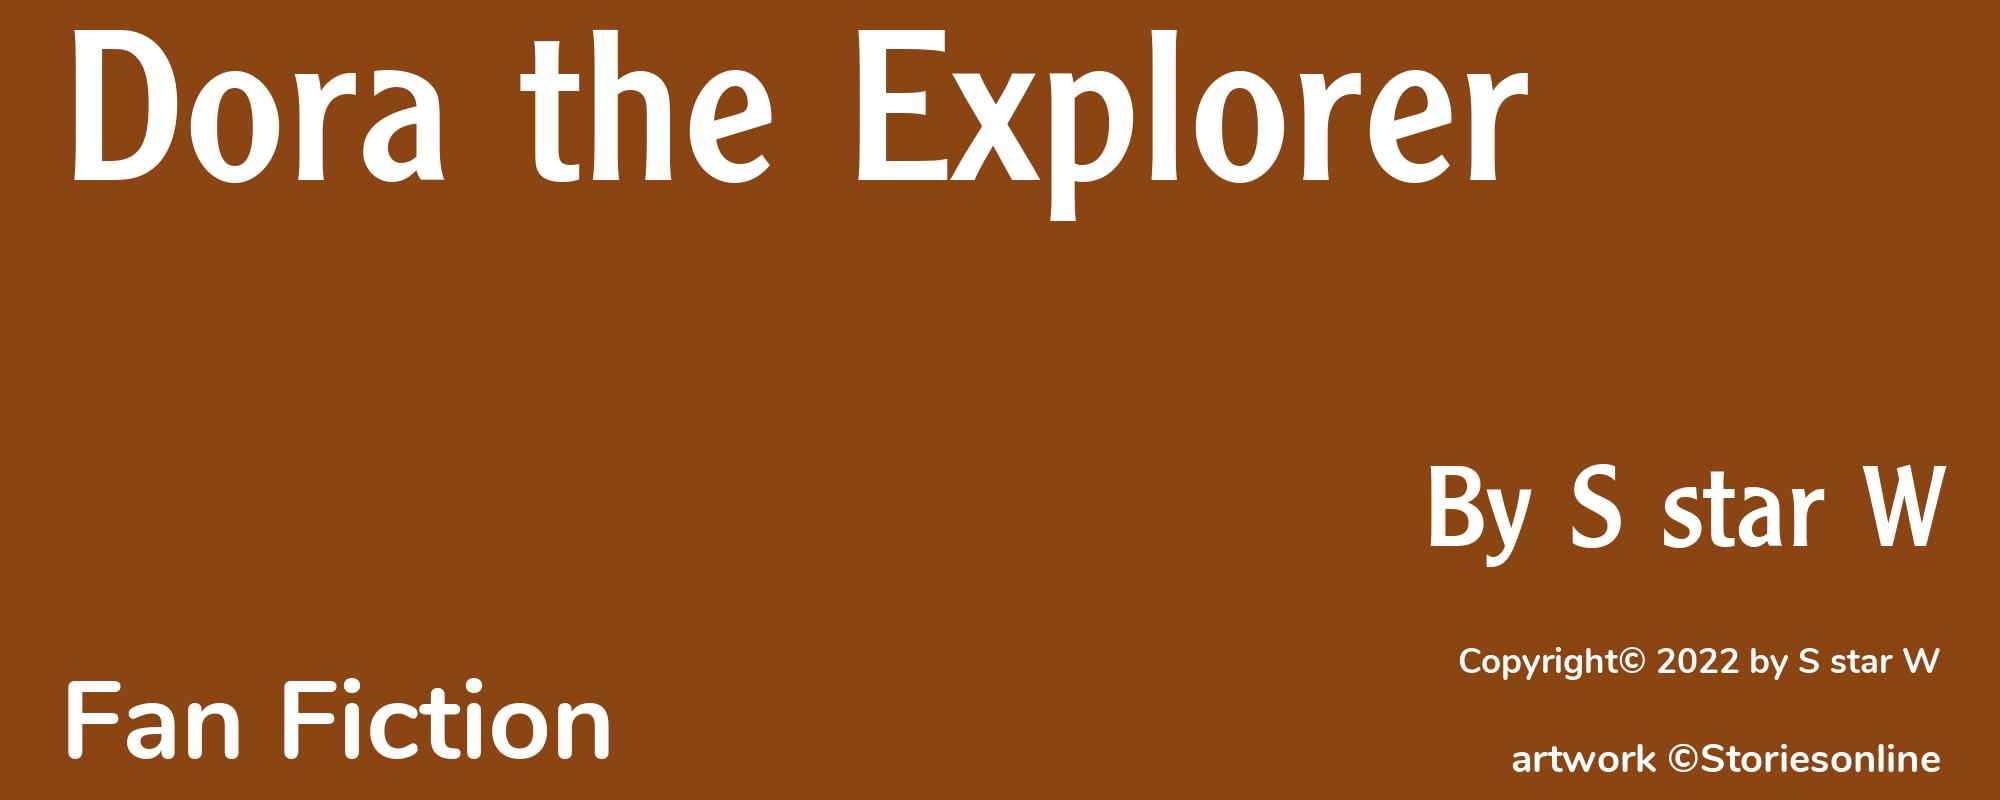 Dora the Explorer - Cover